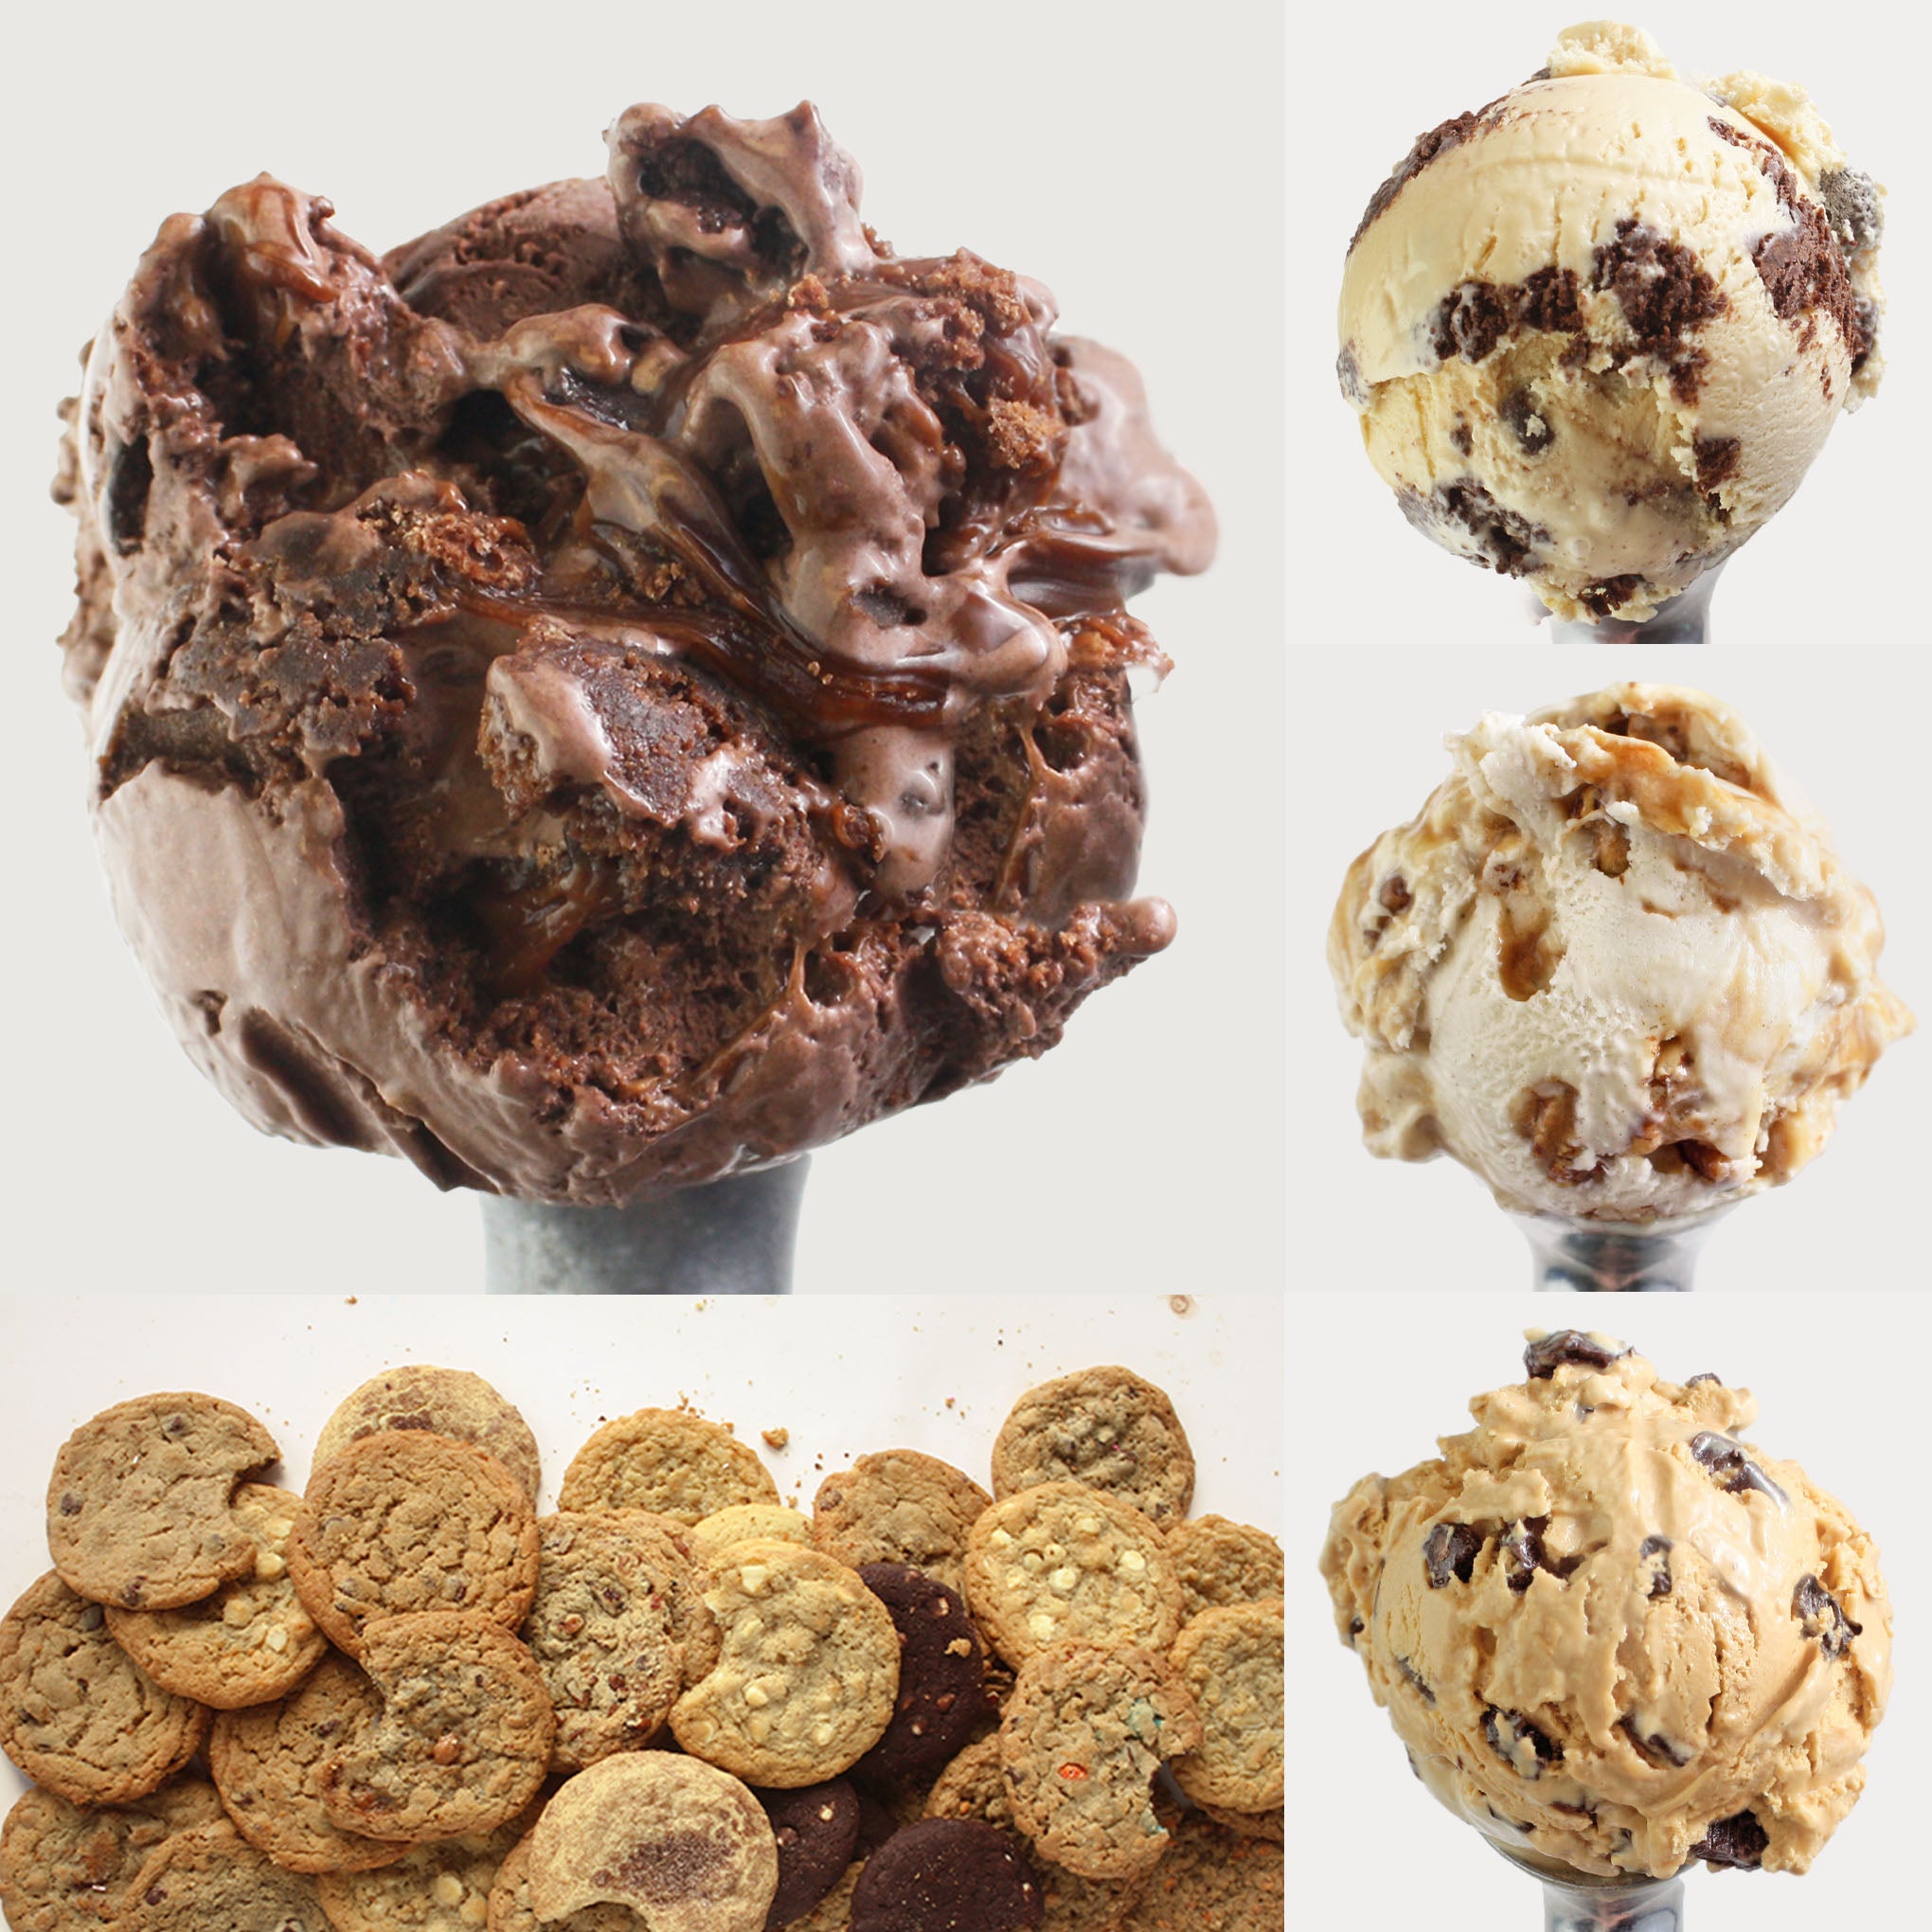 eCreamery Ice Cream Lover Gift Box w/ Gourmet Cookies